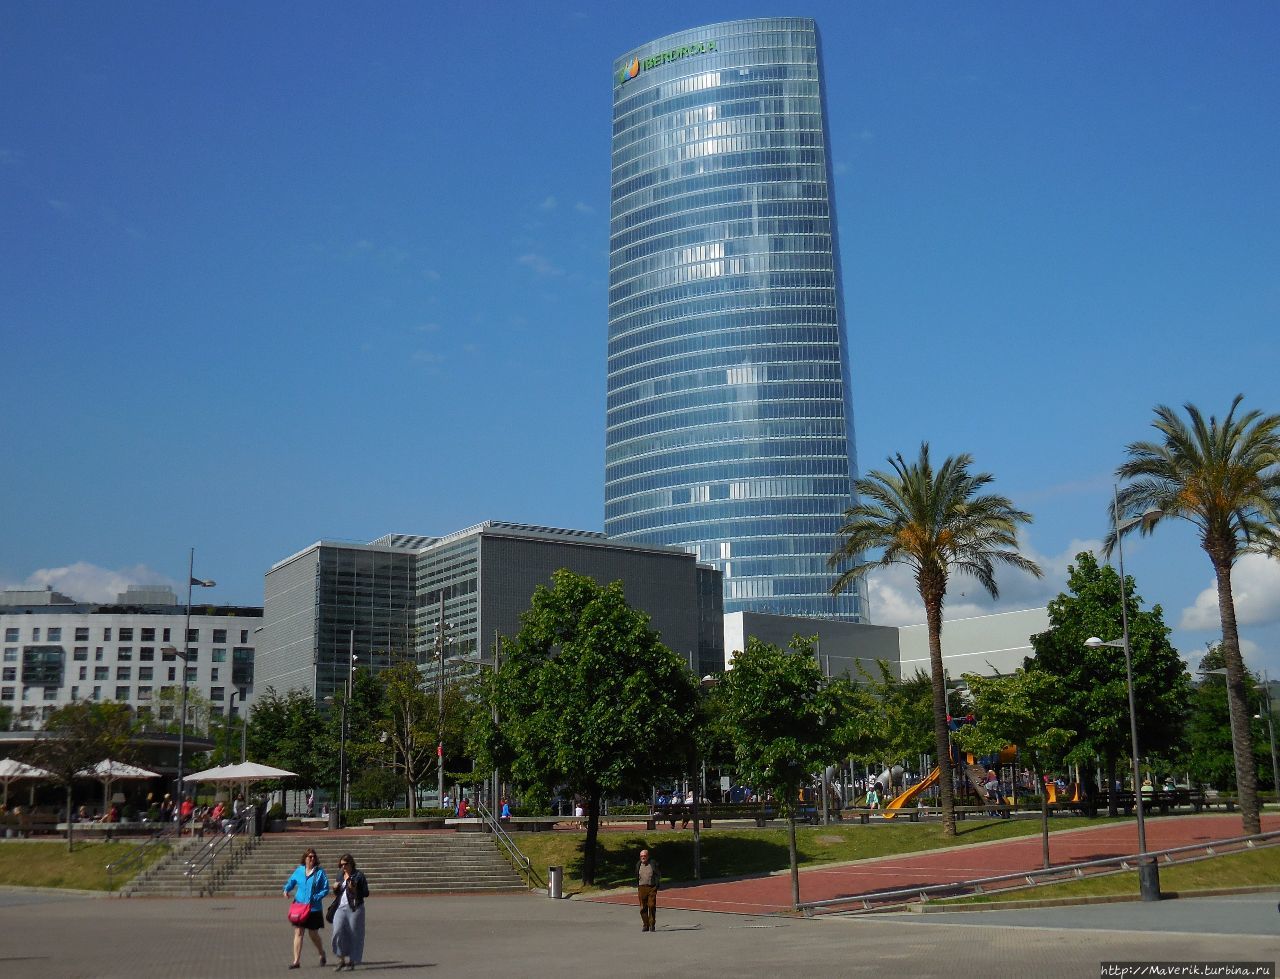 Самое высокое здание Бильбао — башня Ибердрола. Возведена в 2012 году. Бильбао, Испания